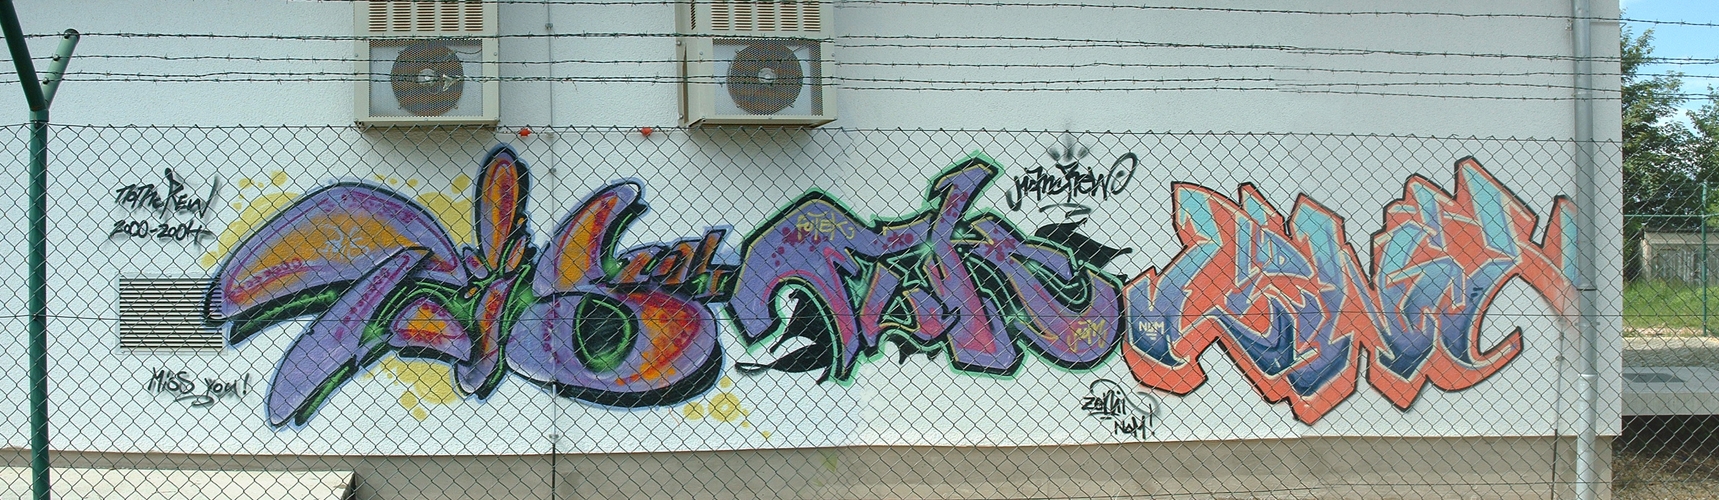 2004 09